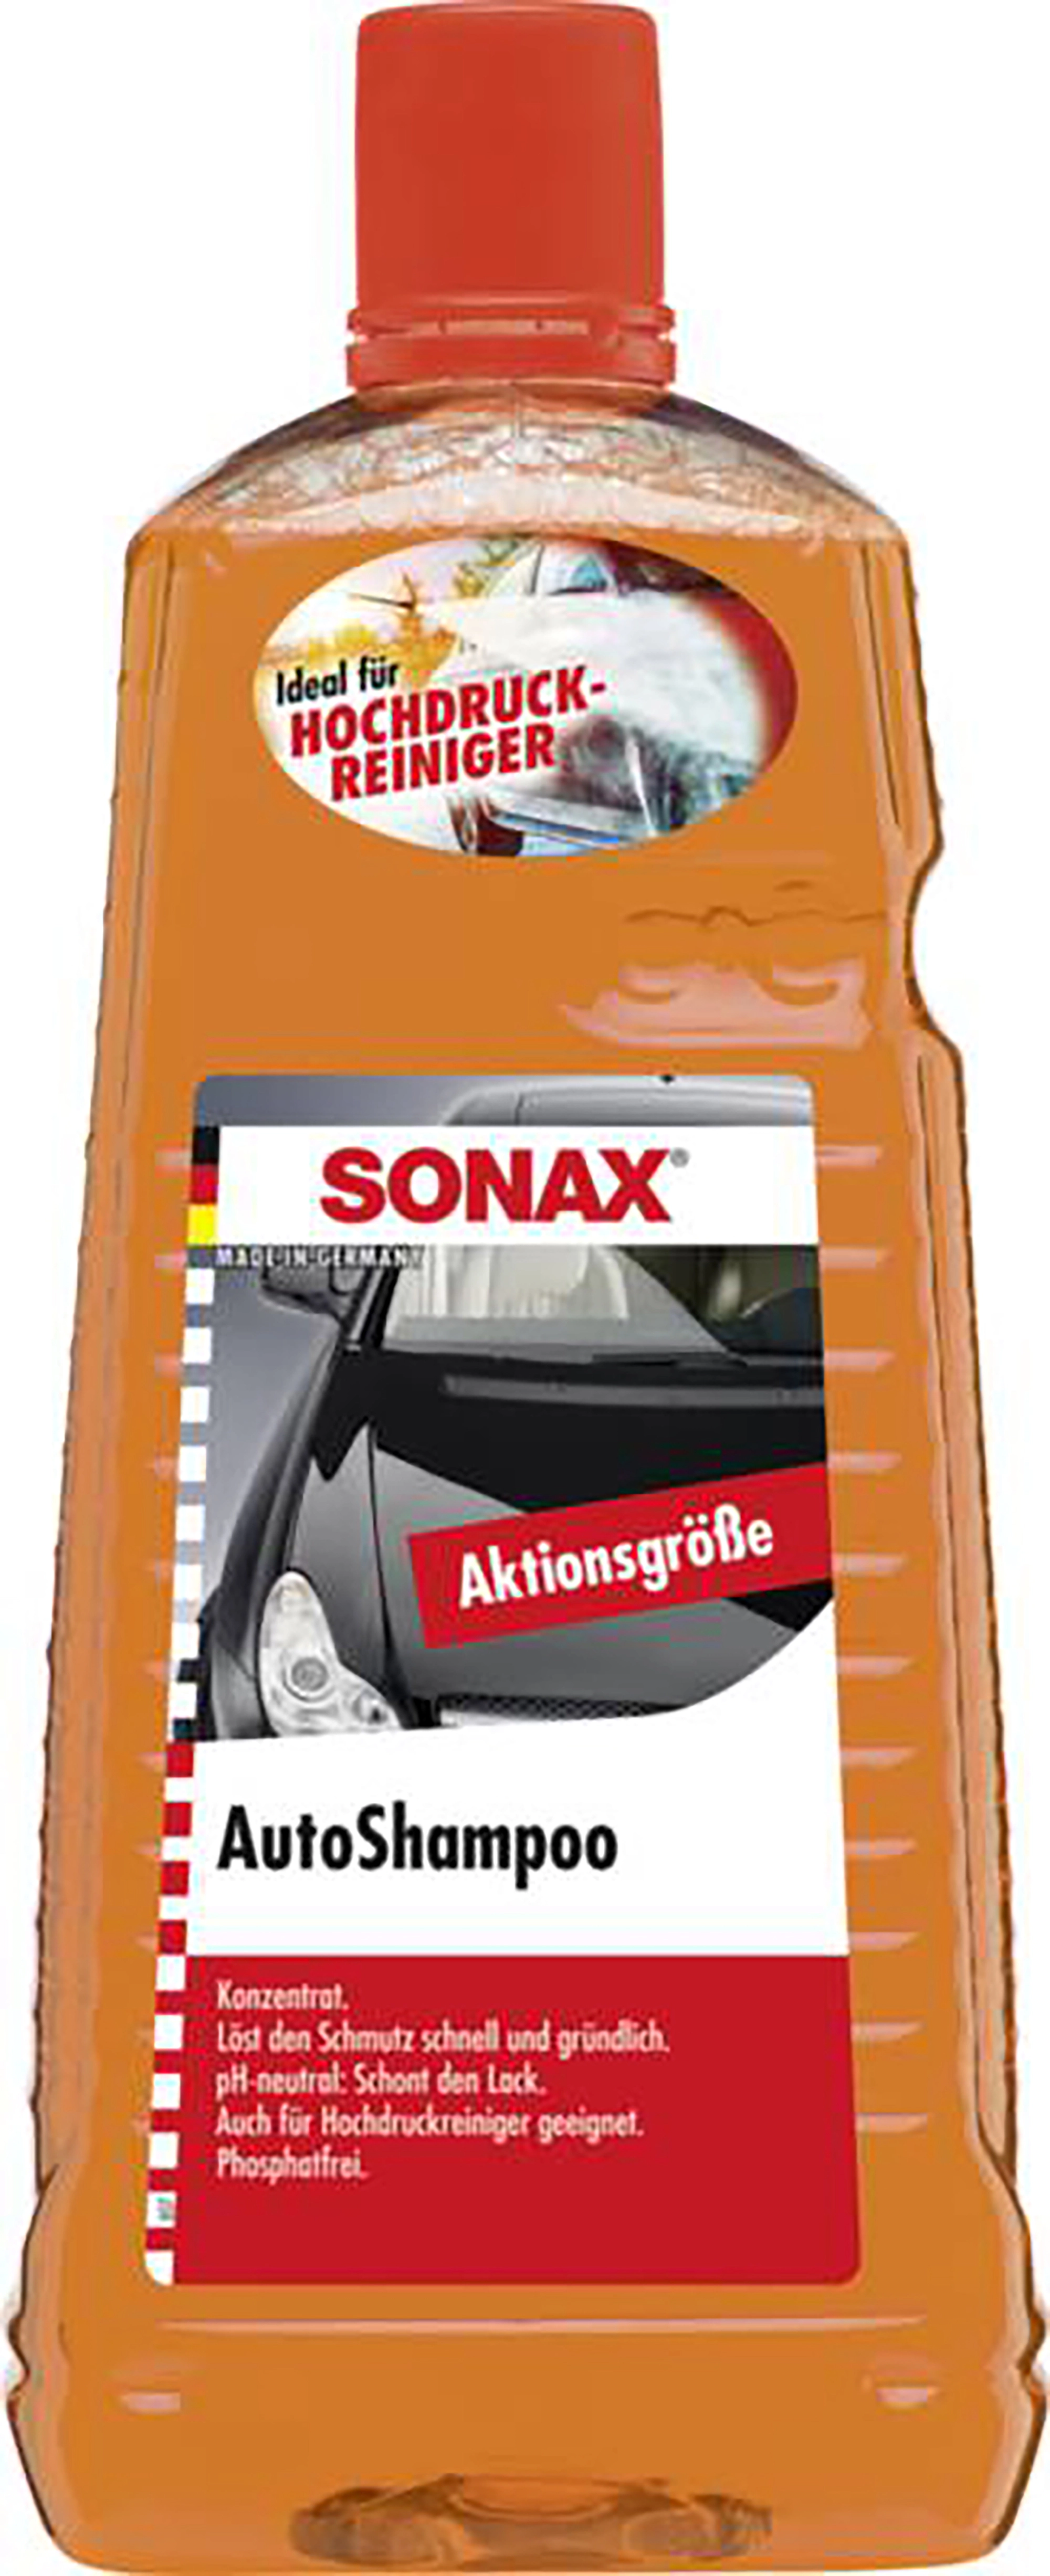 Sonax Gummipflegestift 18 ml kaufen bei OBI